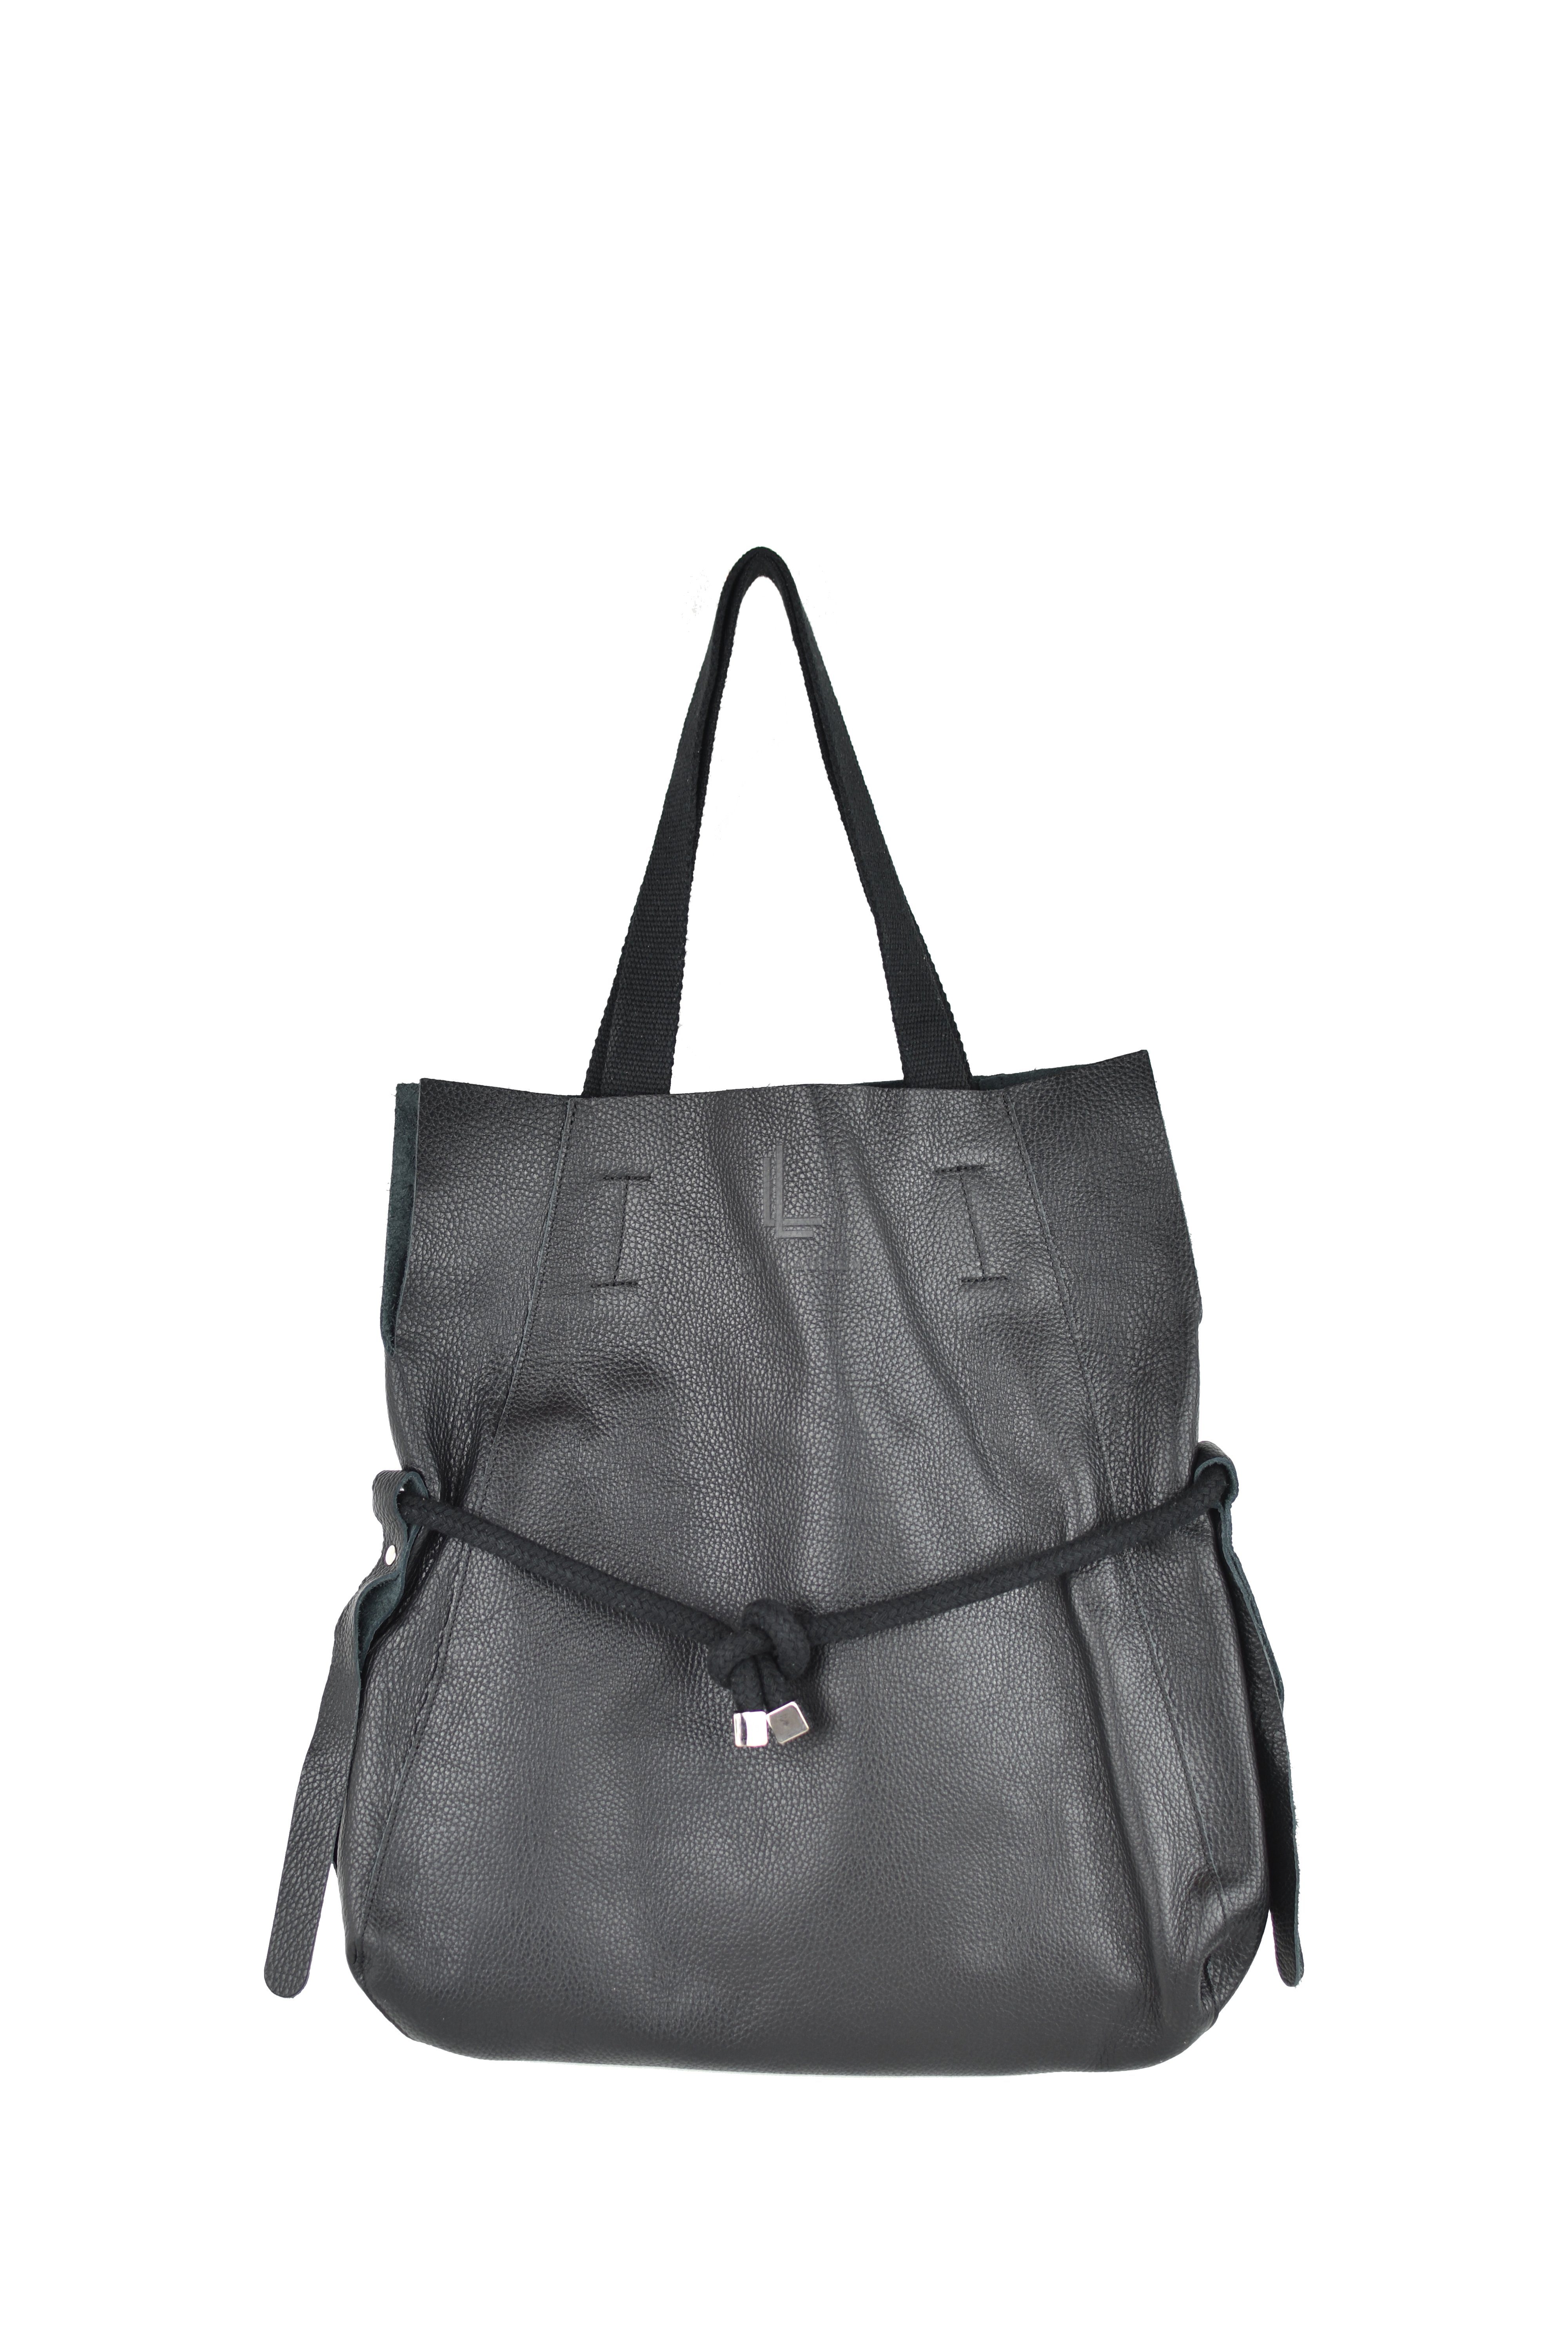 Lara Laurén Shopper Boho Shopper Handtasche Black, Echtledertasche, made in Italy, echt Leder